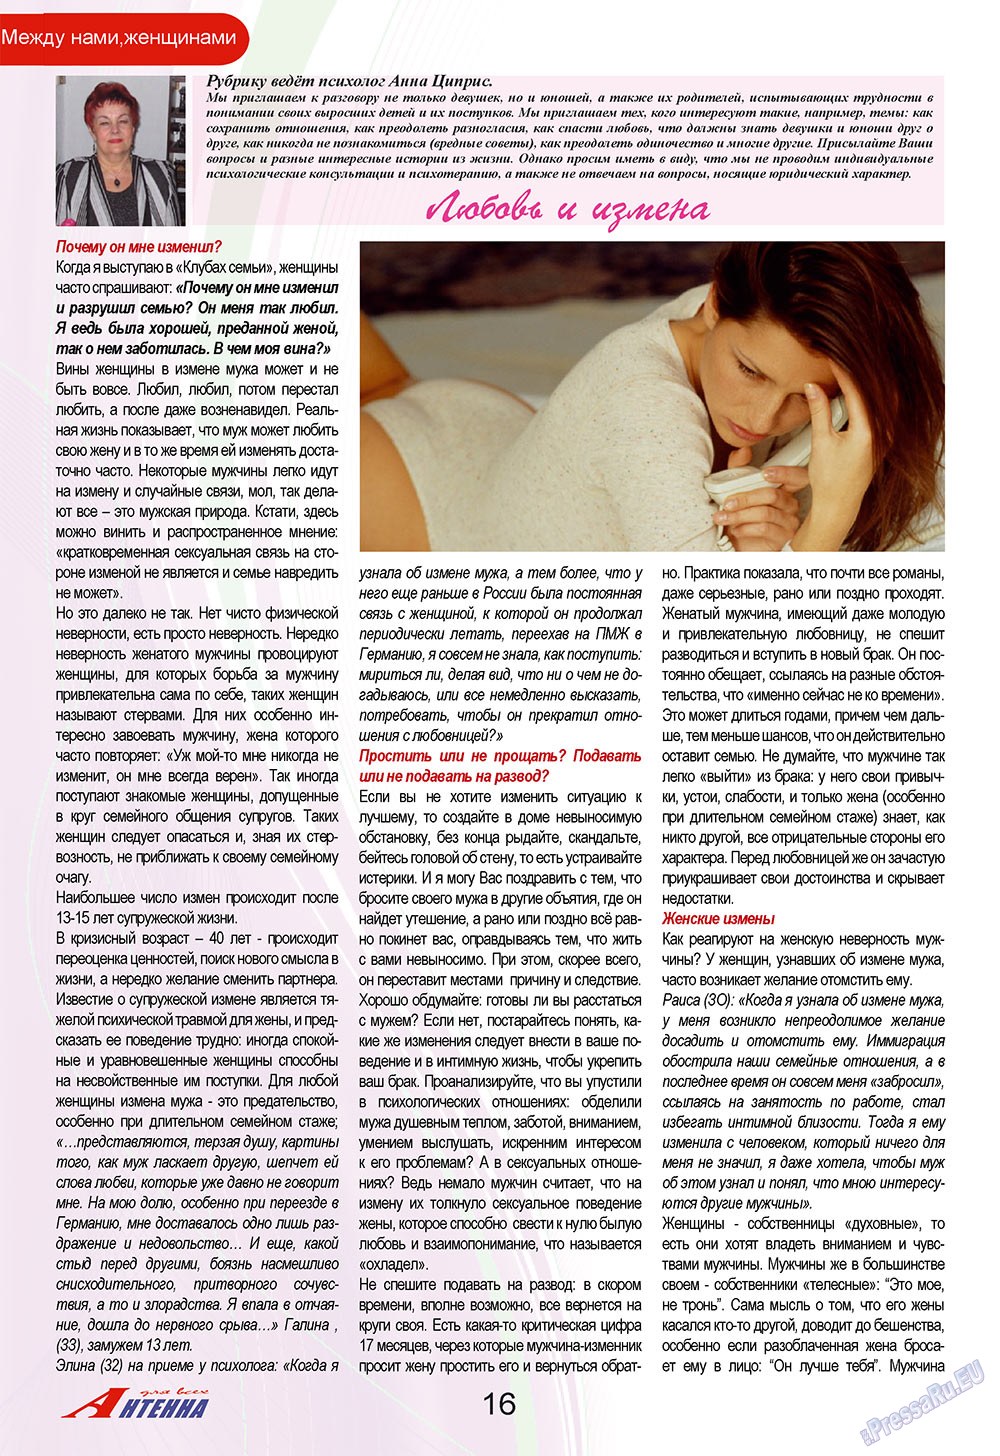 Антенна, журнал. 2009 №11 стр.16